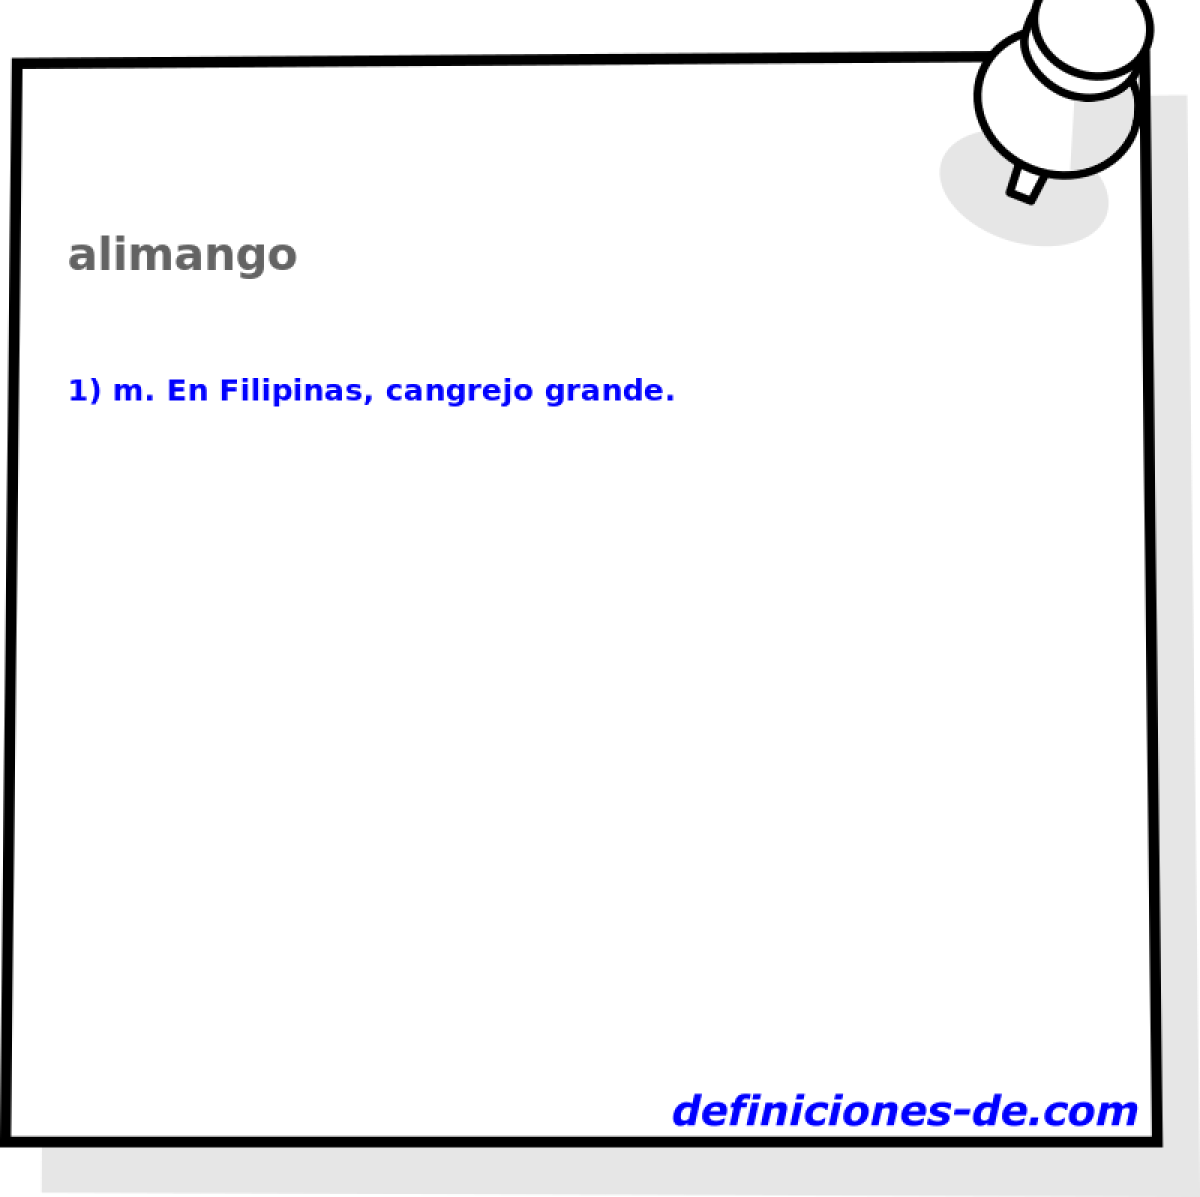 alimango 